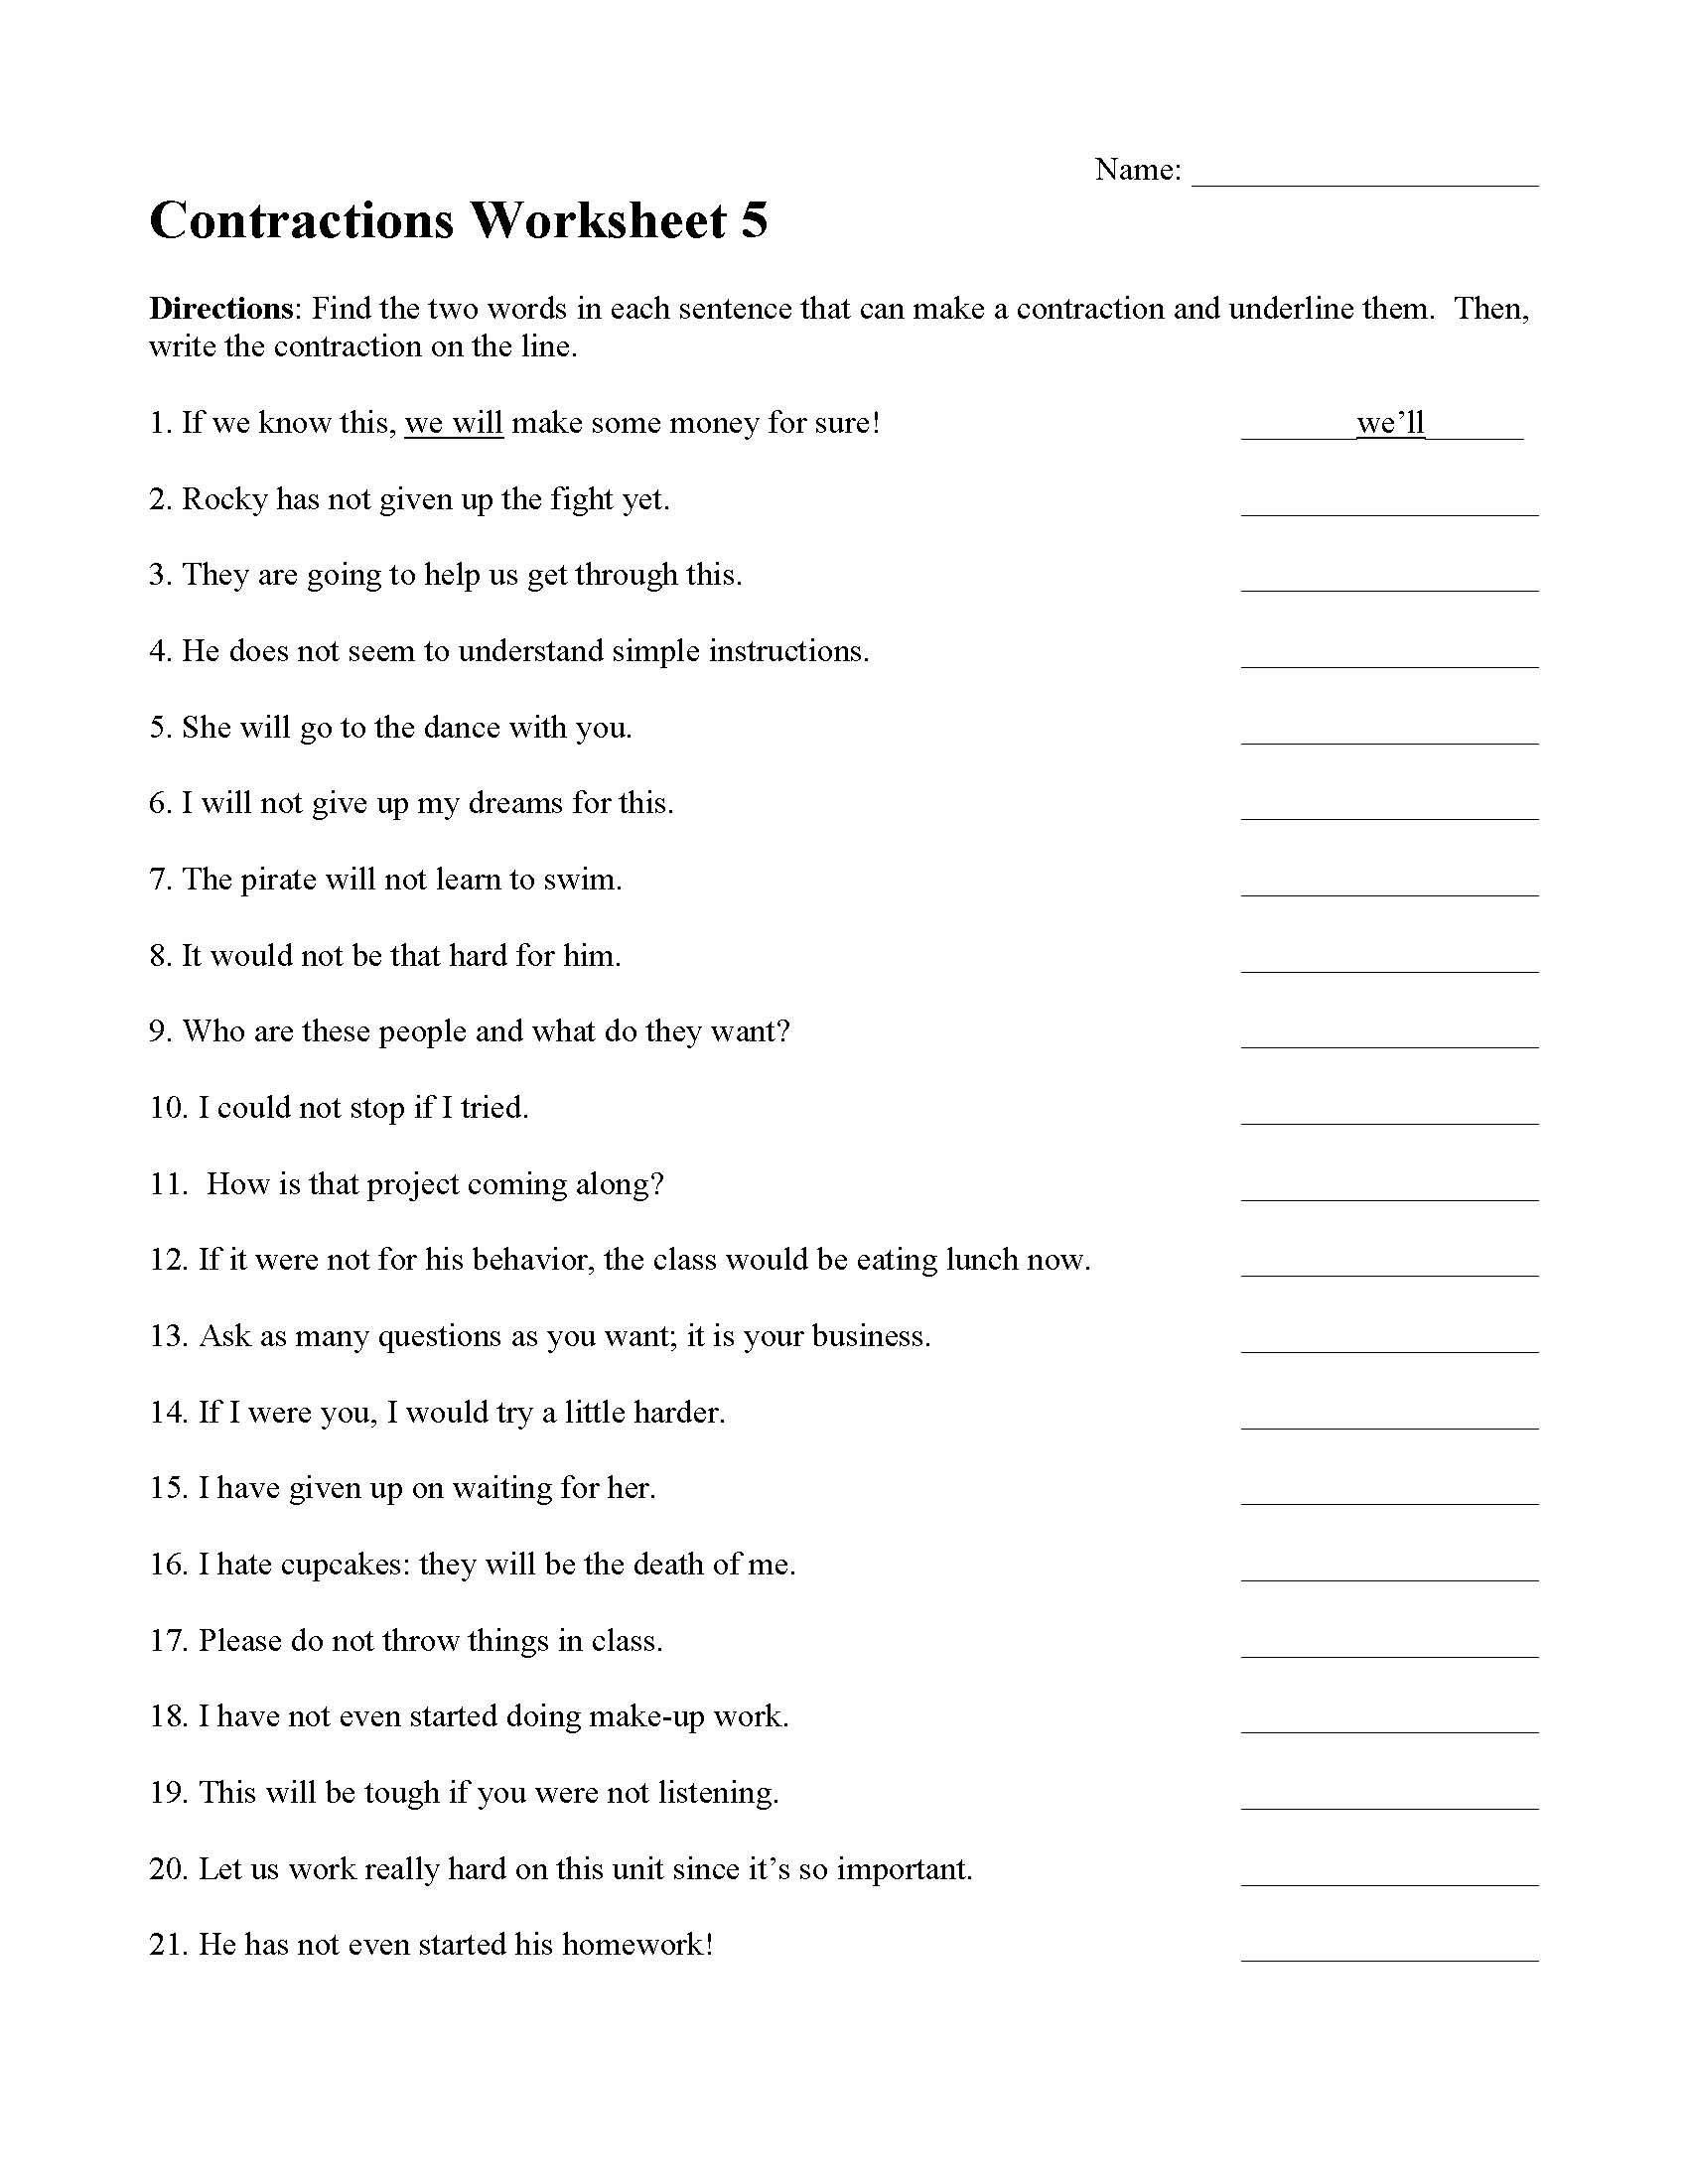 contractions worksheet 5 grammar activity